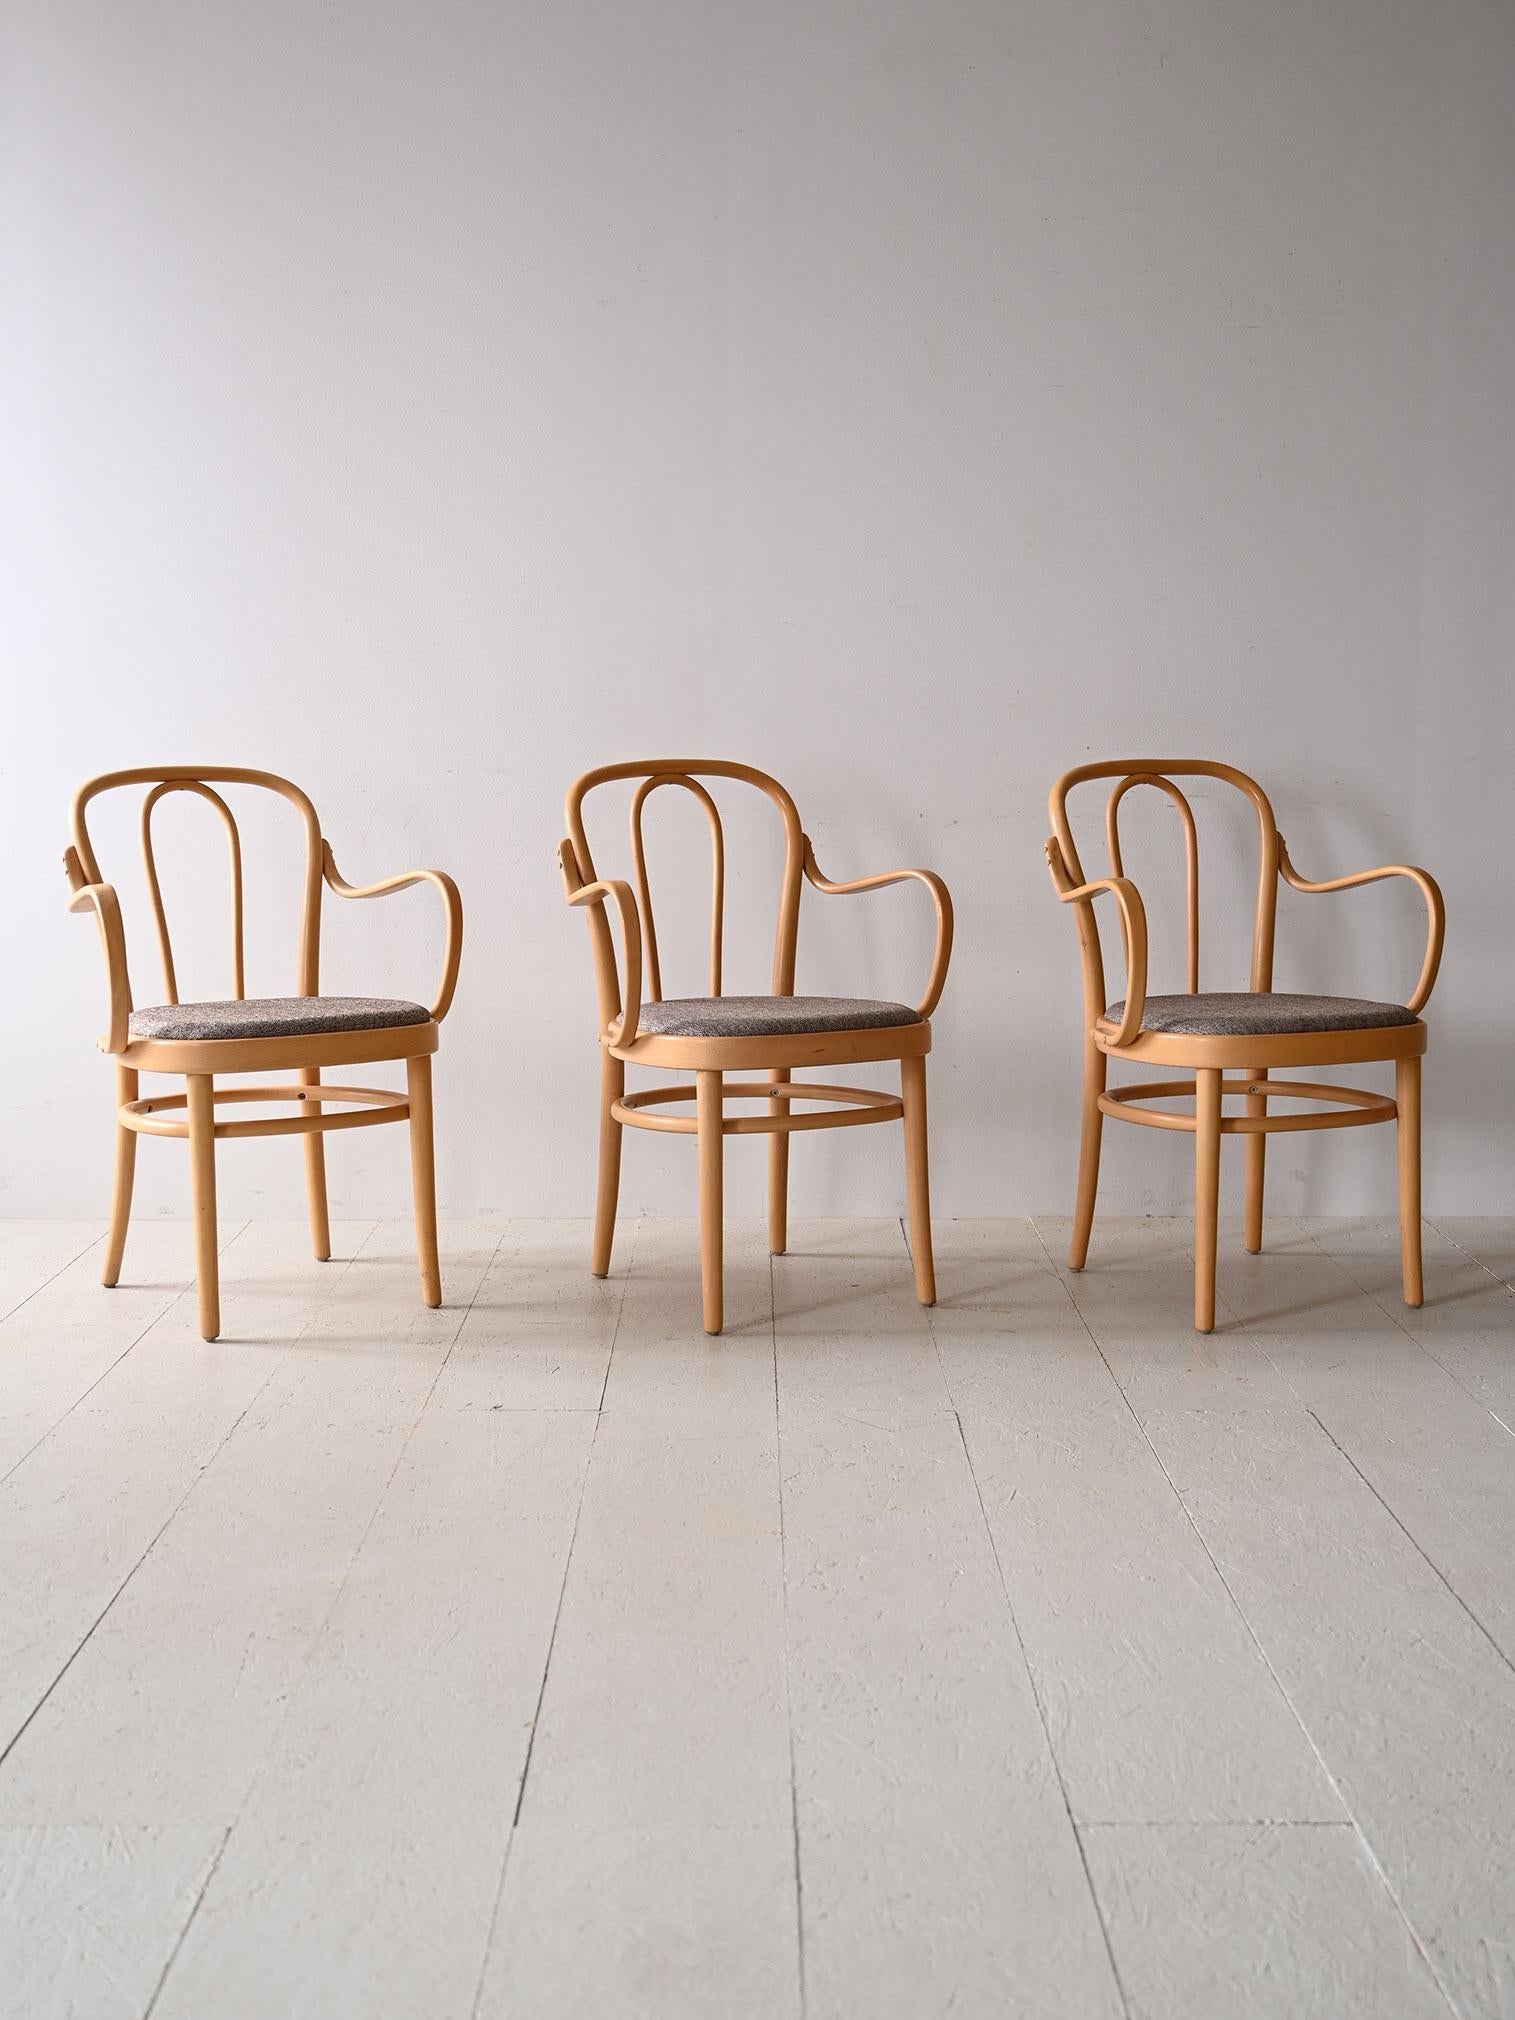 Set aus skandinavischen Sesseln in Legno mit geflochtenen Sesseln.

Diese herrlichen Vintage-Sitzmöbel aus dem Hause fascino retrò präsentieren eine Struktur aus morbiden Legosteinen, die an das organische Design der nordischen Tradition